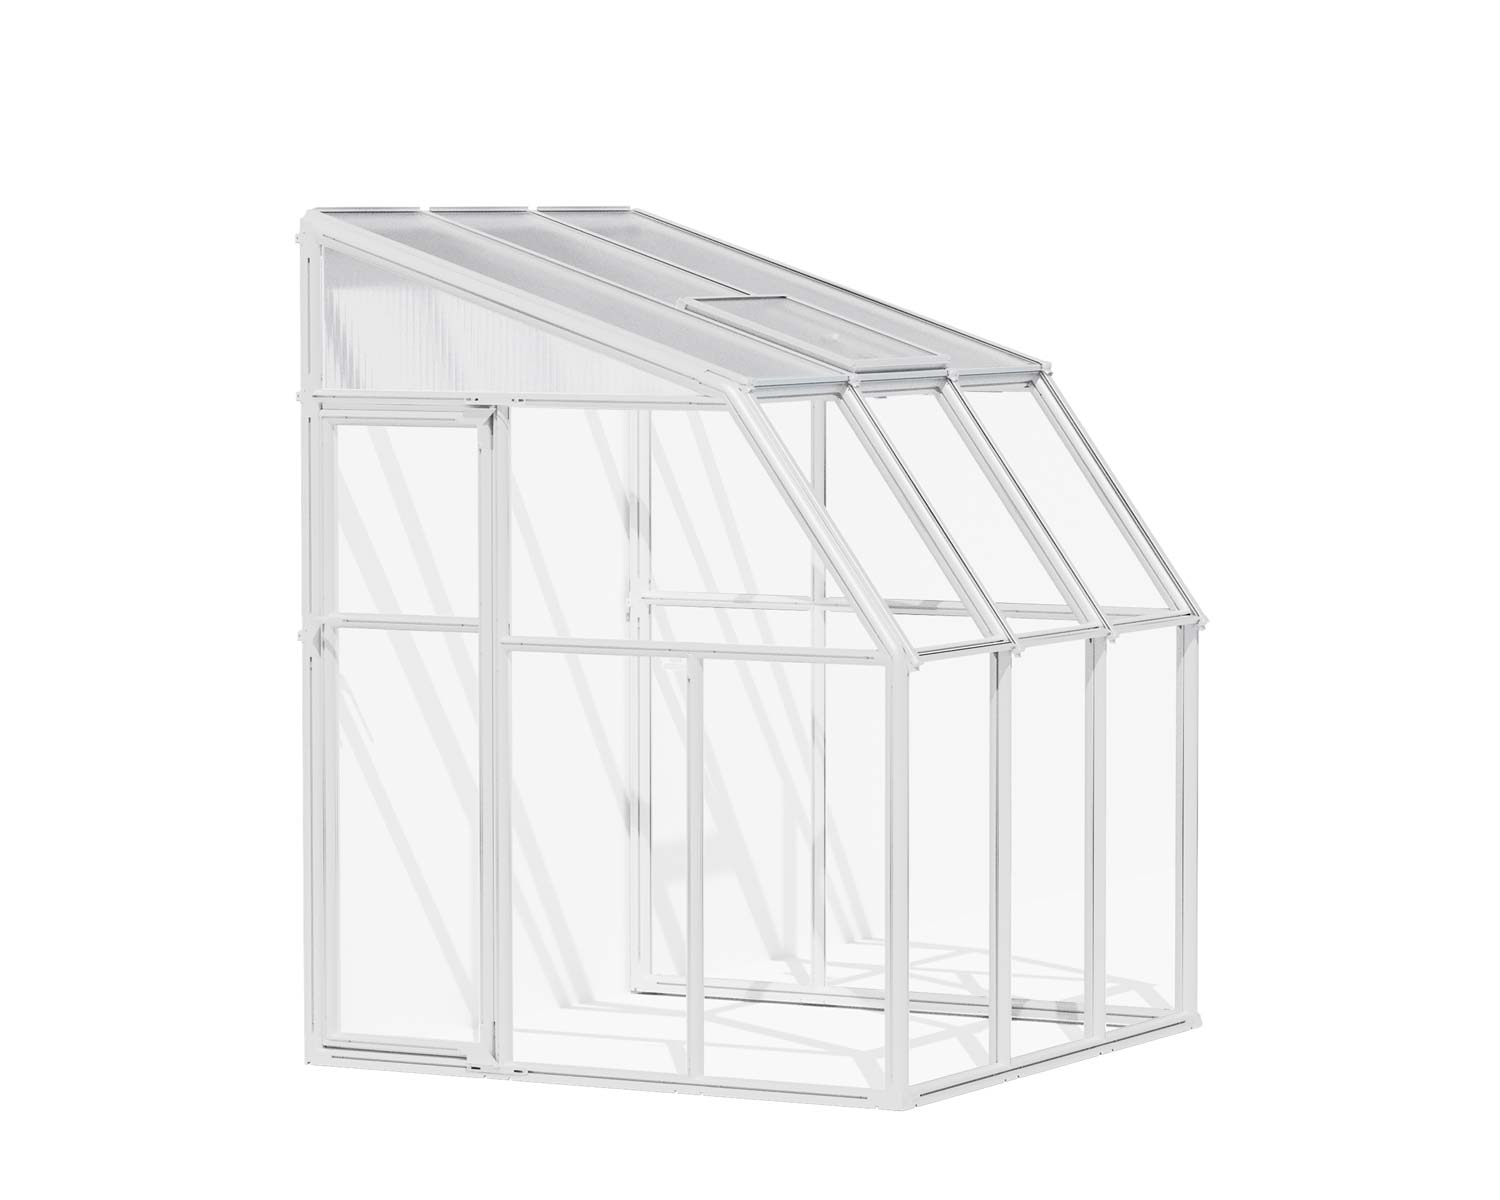 Solarium SunRoom Kit 6 ft. x 6 ft. White Structure &amp; Hybrid Glazing